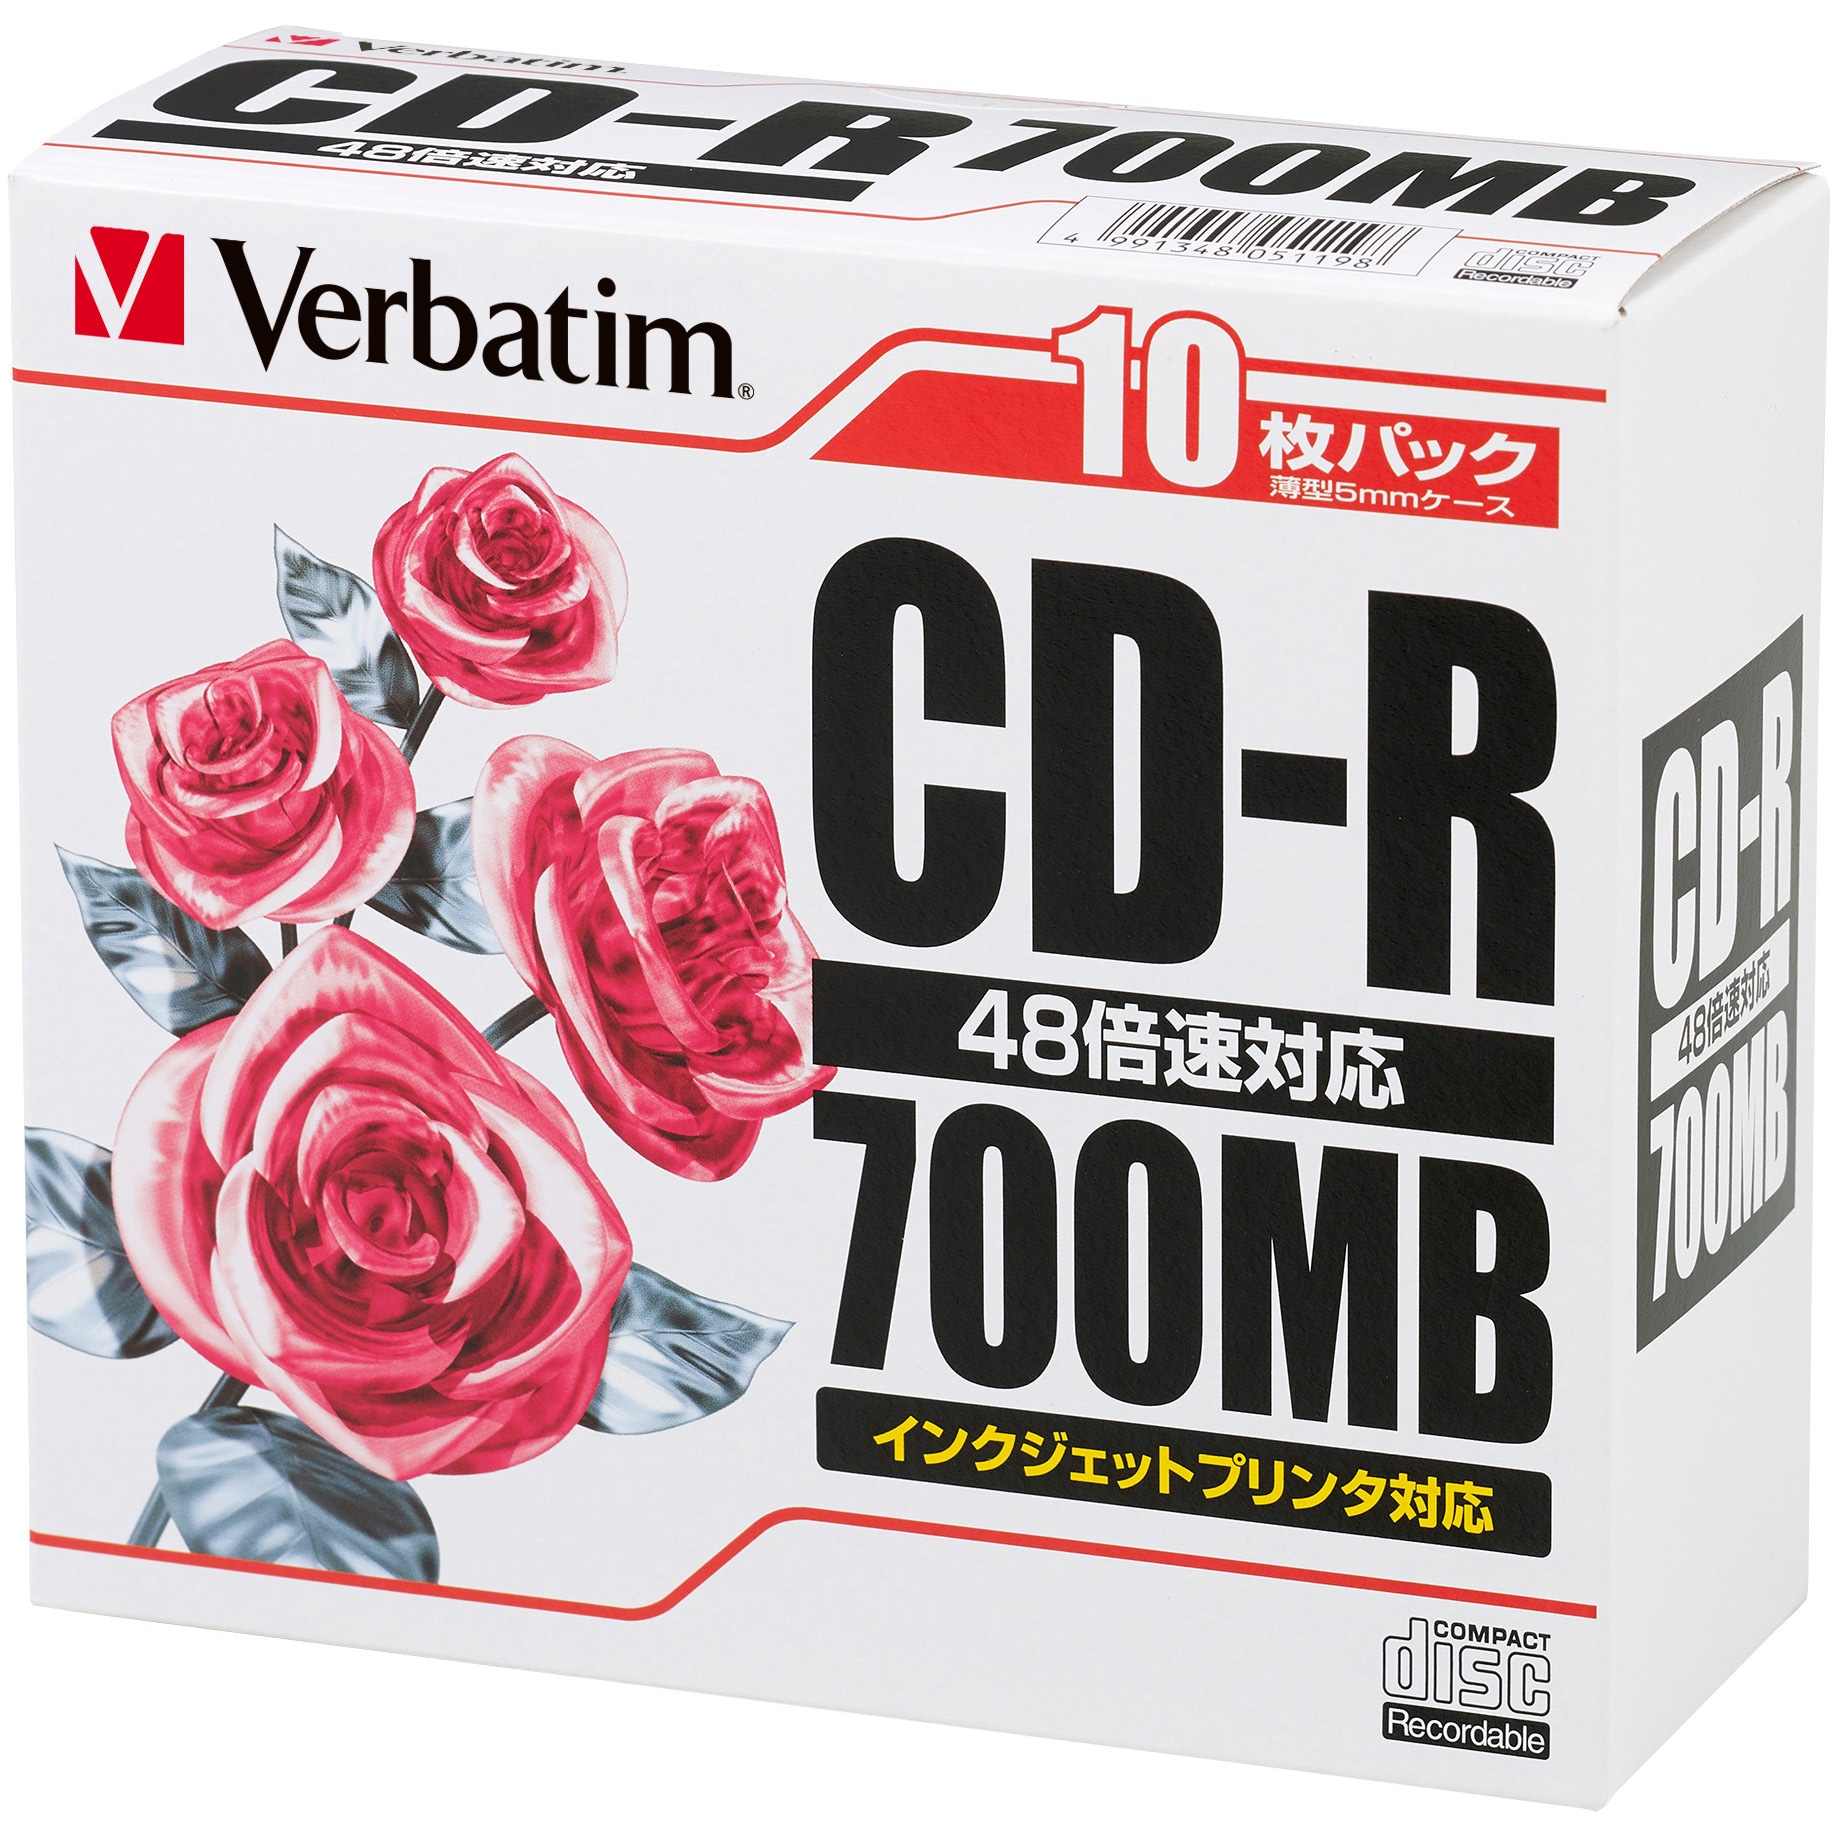 CD-Rメディア 48倍速対応